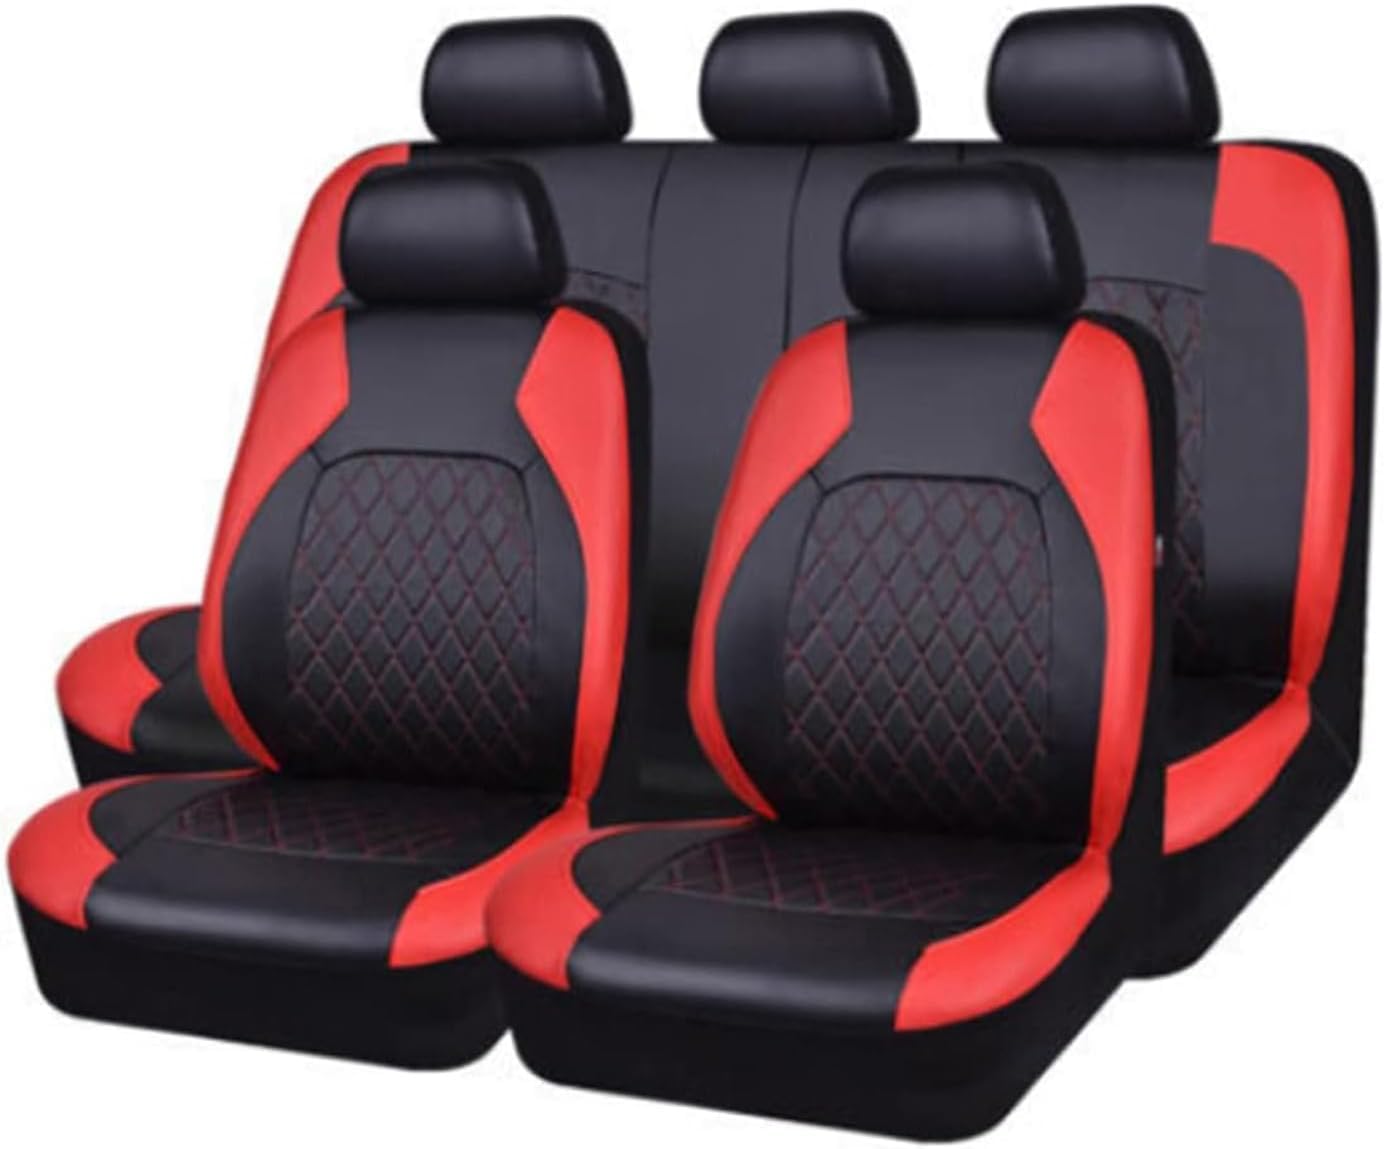 Auto Leder Sitzbezüge für Audi A1 A3 A4 A5 A6 A7 A8 A4L A6L A8L Q2 Q3 Q5 Q7 Q5L, 9 Stück Allwetter rutschfest Wasserdicht Atmungsaktiv Schonbezug Set Sitzkissenschutz,D/red von SARCX